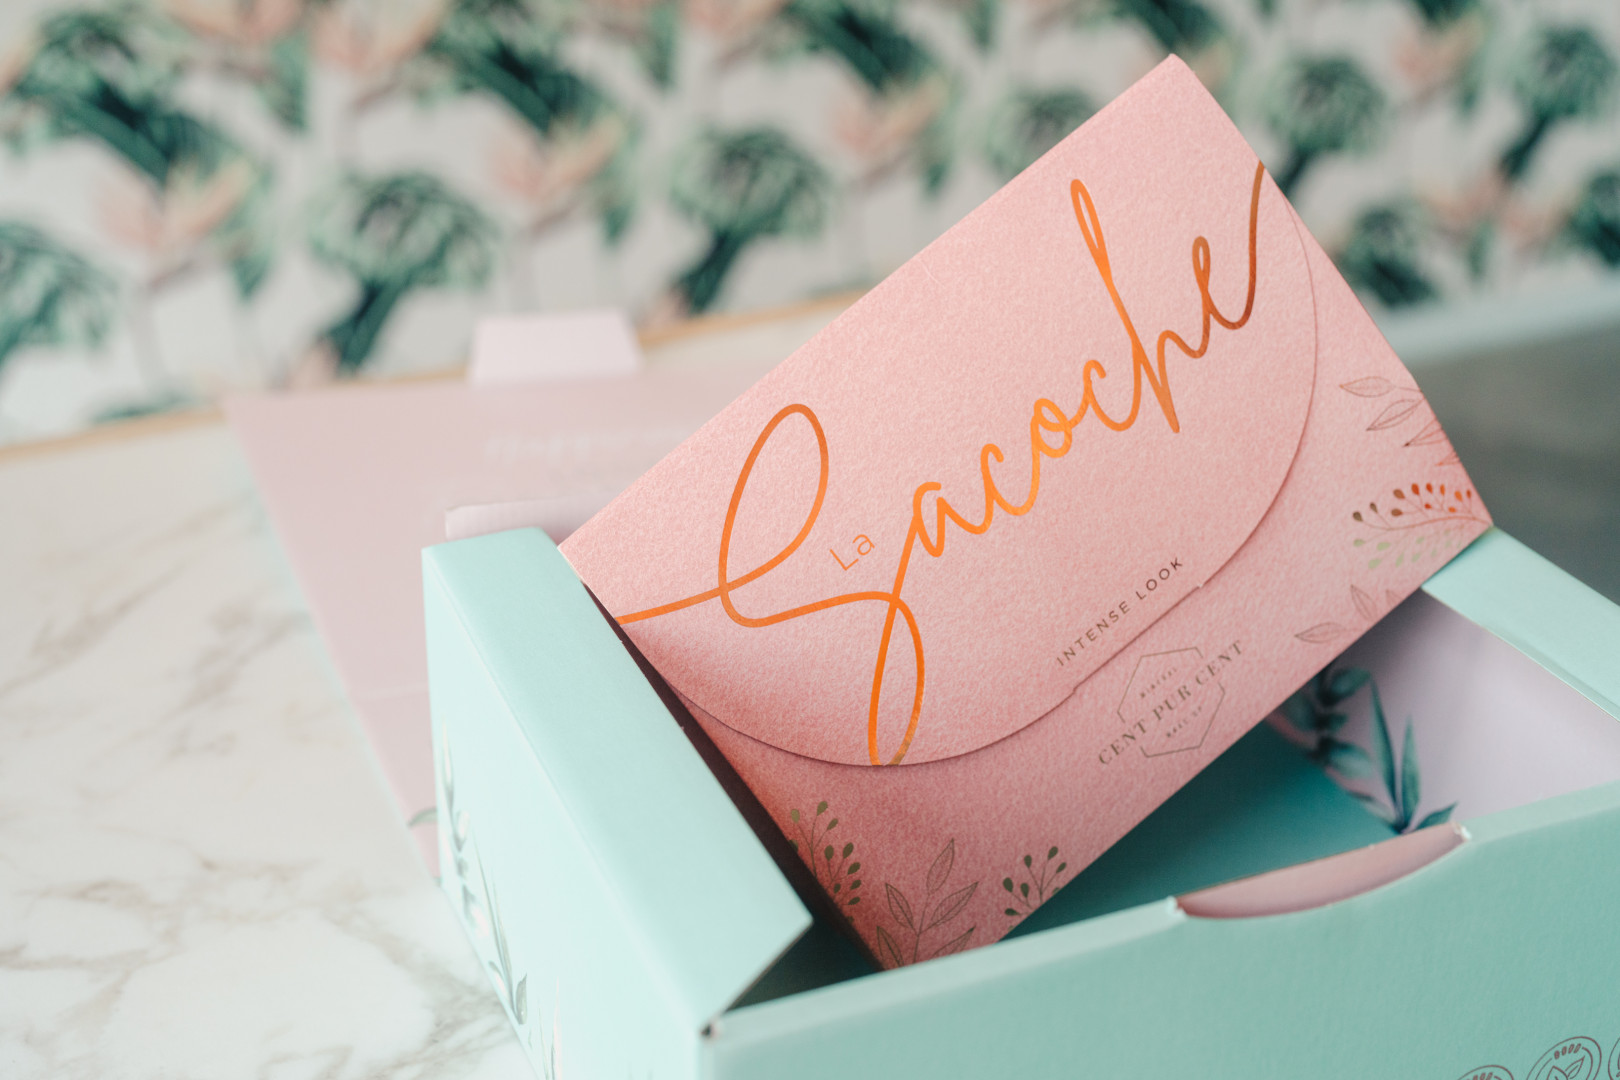 Pastelkleurige roze en blauwe kartonnen productverpakking met koperkleurige letters